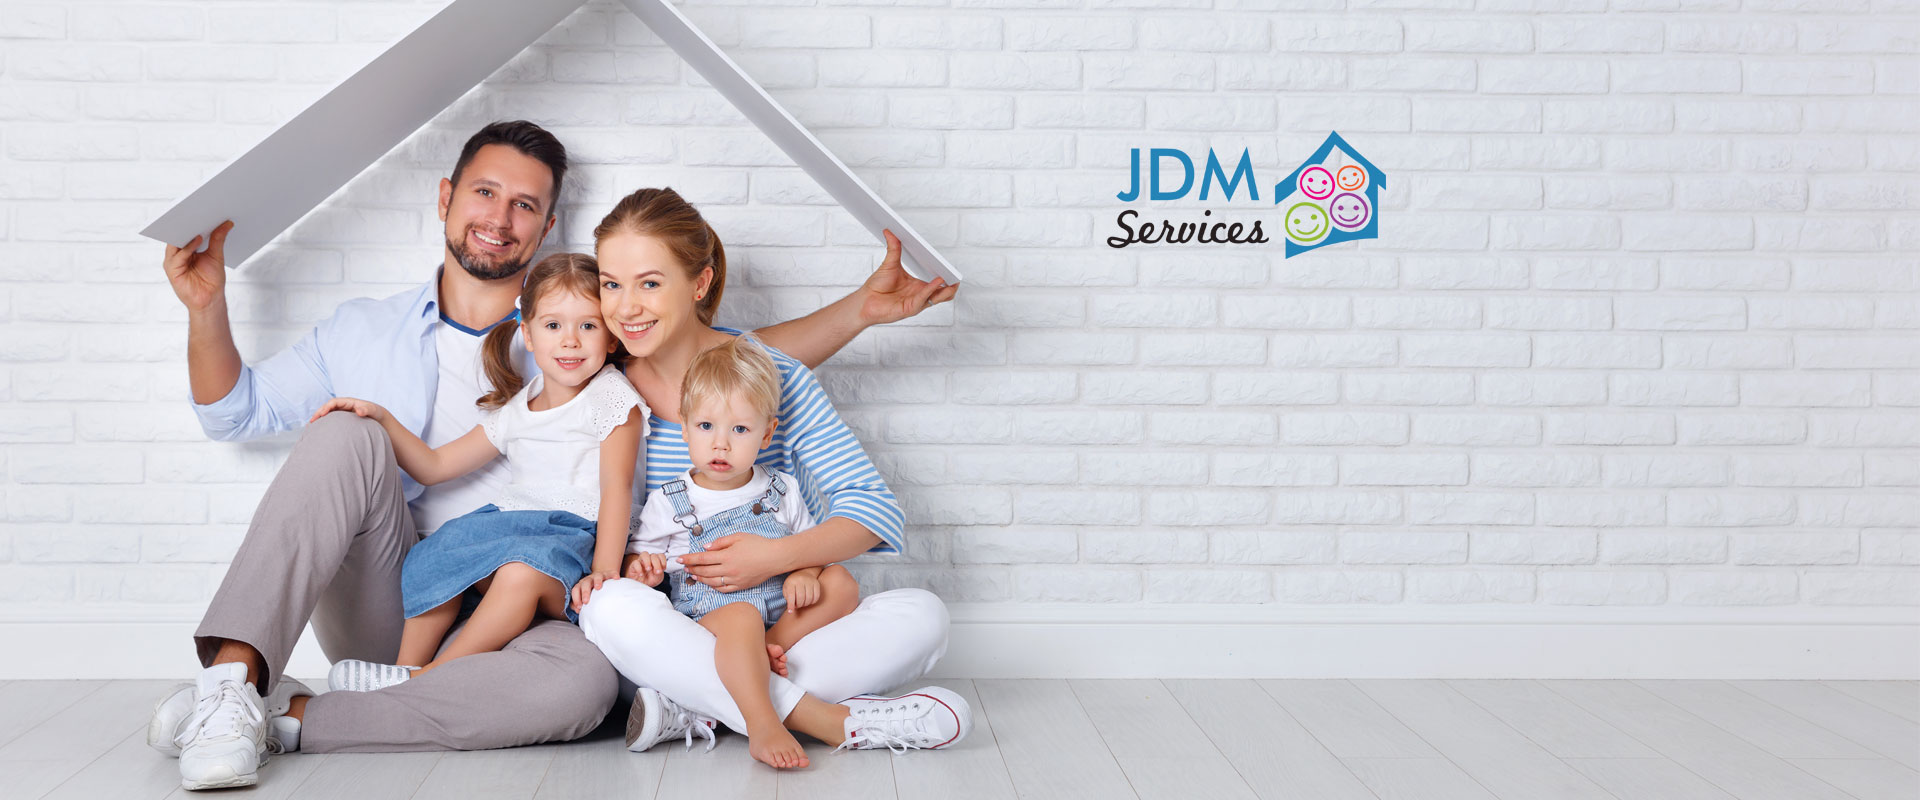 JDM Services, prestations à domicile <br /> Vous pouvez respirer, on s'occuppe de tout !